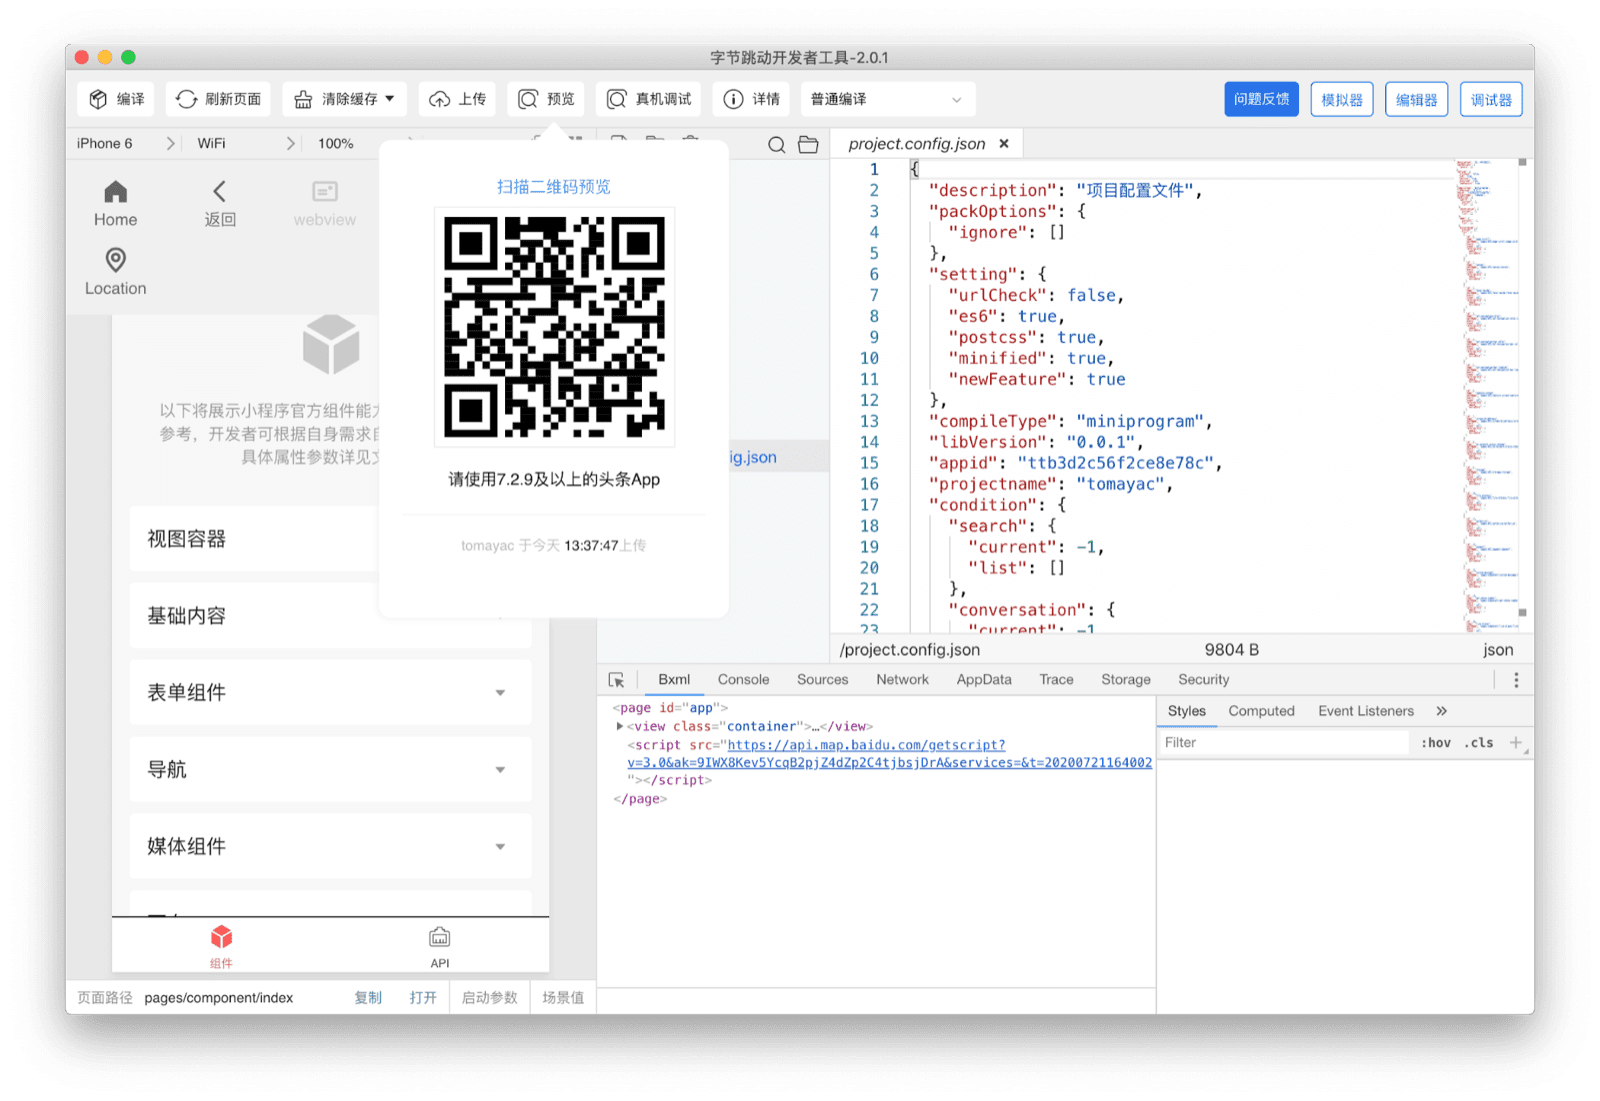 ByteDance DevTools pokazujący kod QR, który użytkownik może zeskanować za pomocą aplikacji Douyin, aby zobaczyć aktualną miniaplikację na urządzeniu.